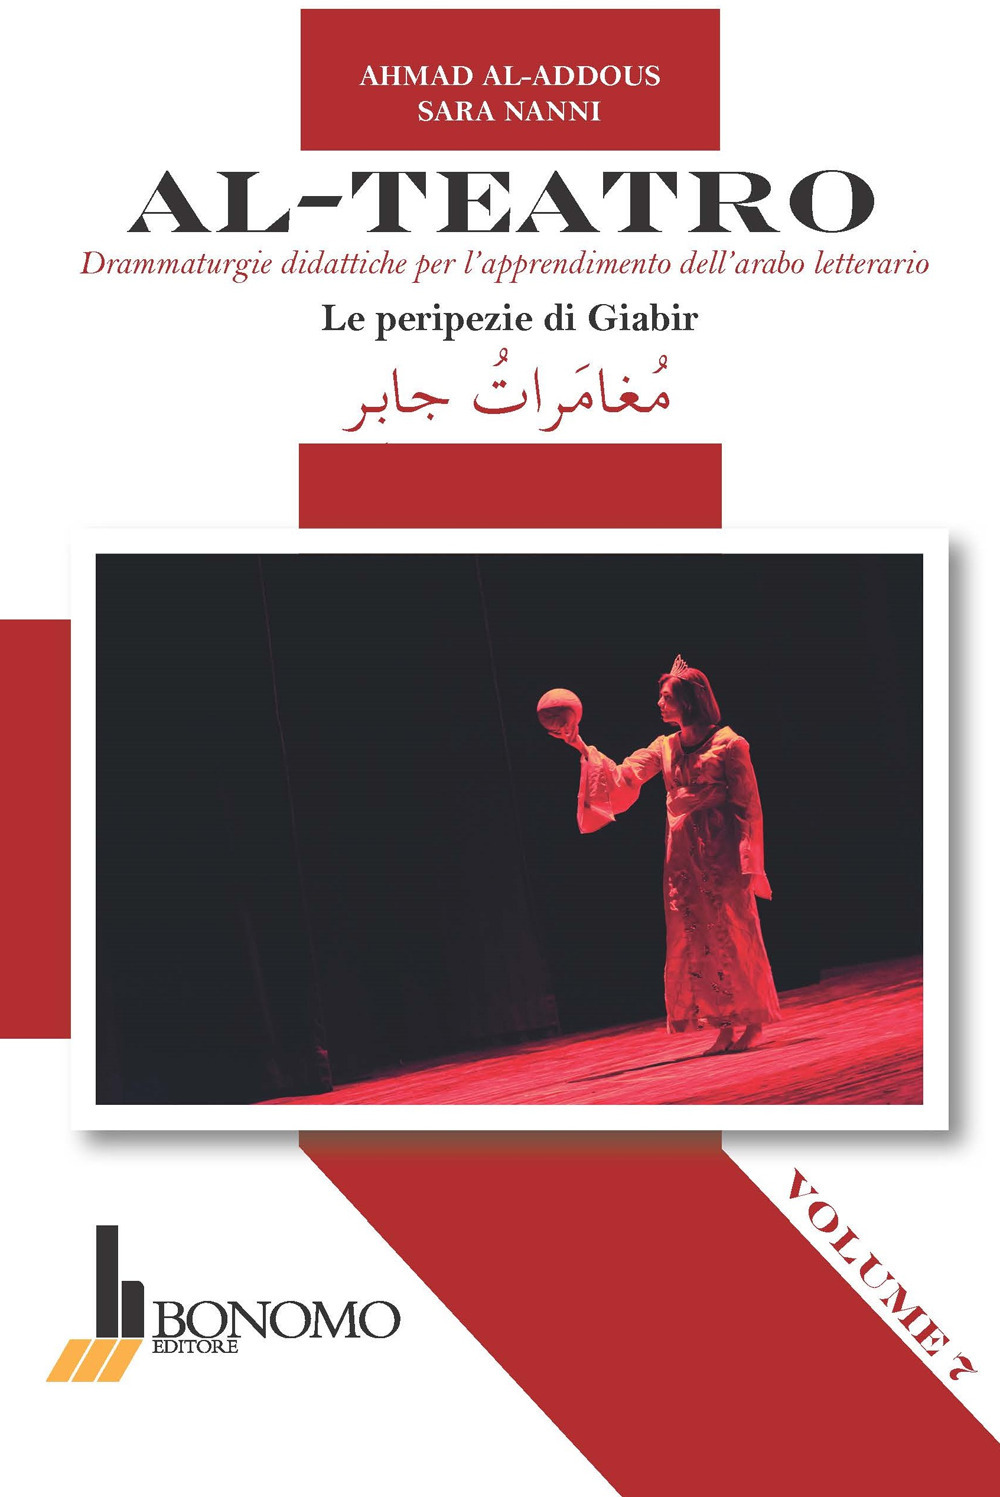 Al-teatro. Drammaturgie didattiche per l'apprendimento dell'arabo letterario. Ediz. bilingue. Vol. 7: Le peripezie di Giabir